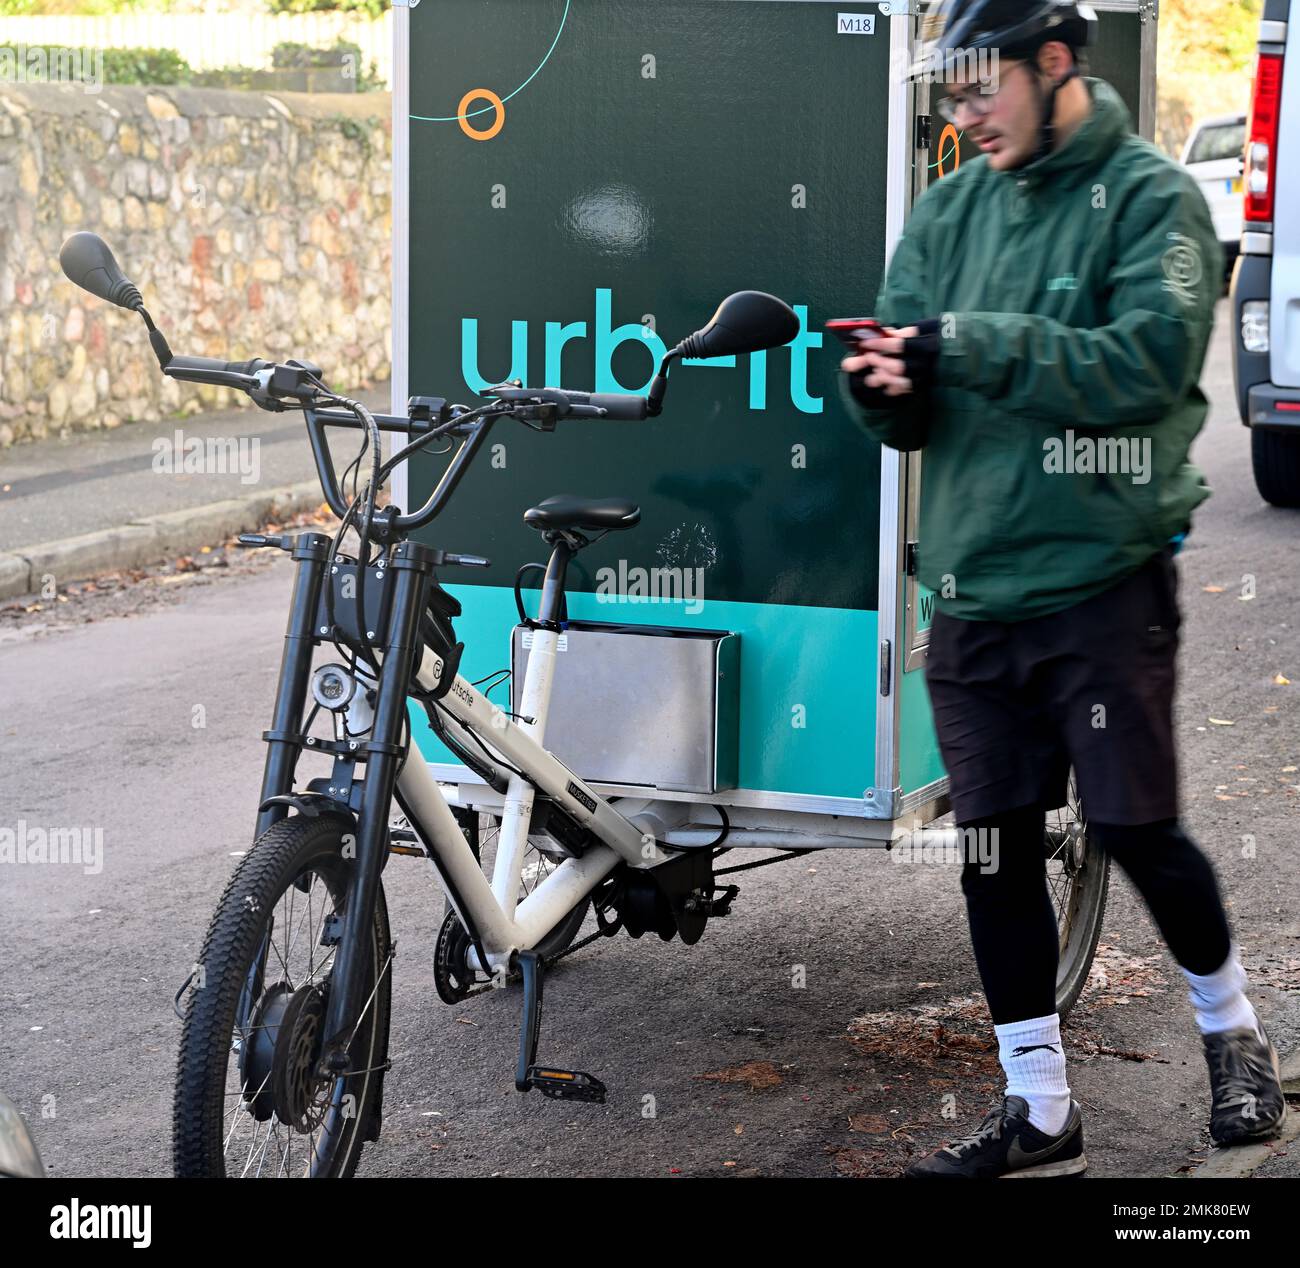 Cargo-Bike und Radfahrer, die für die Lieferung von Paketen durch den Fahrradkurier urb-IT, England, verwendet werden Stockfoto